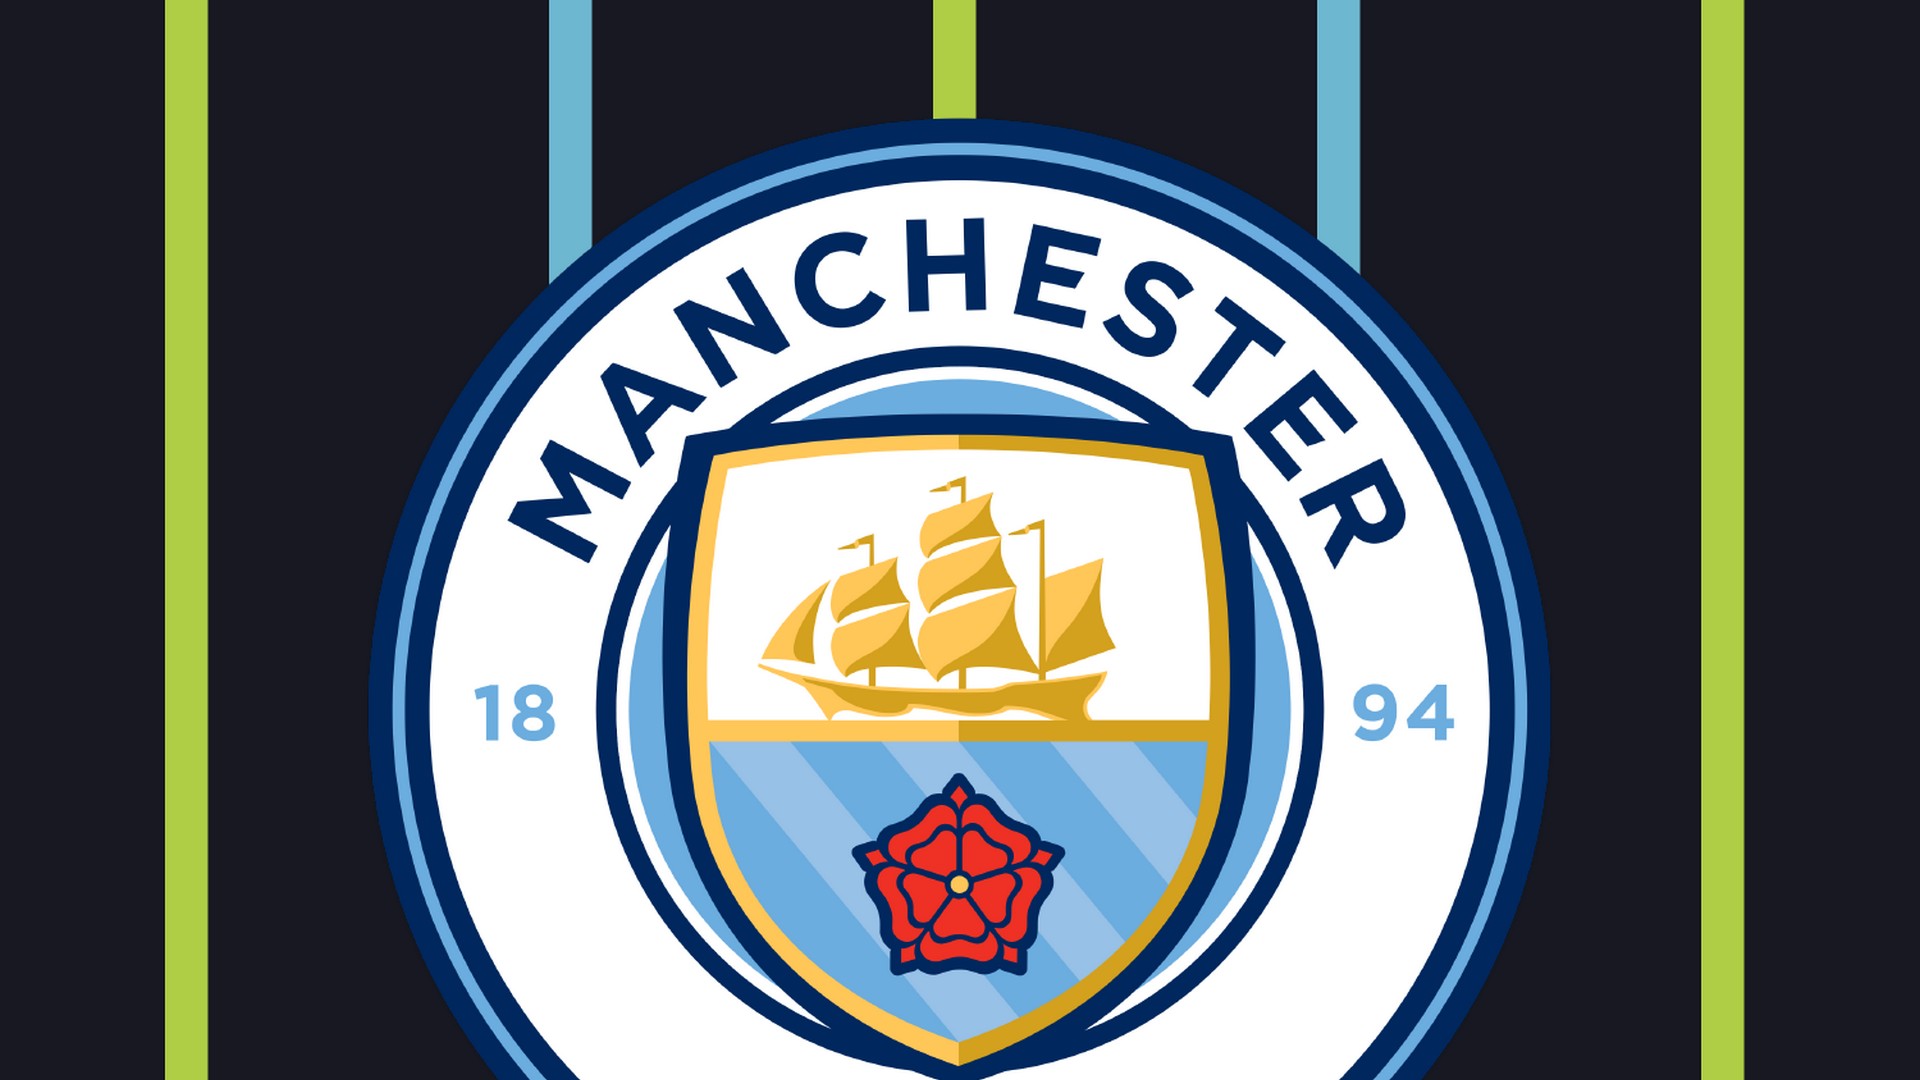 Manchester City Backgrounds Hd 2021 Football Wallpaper